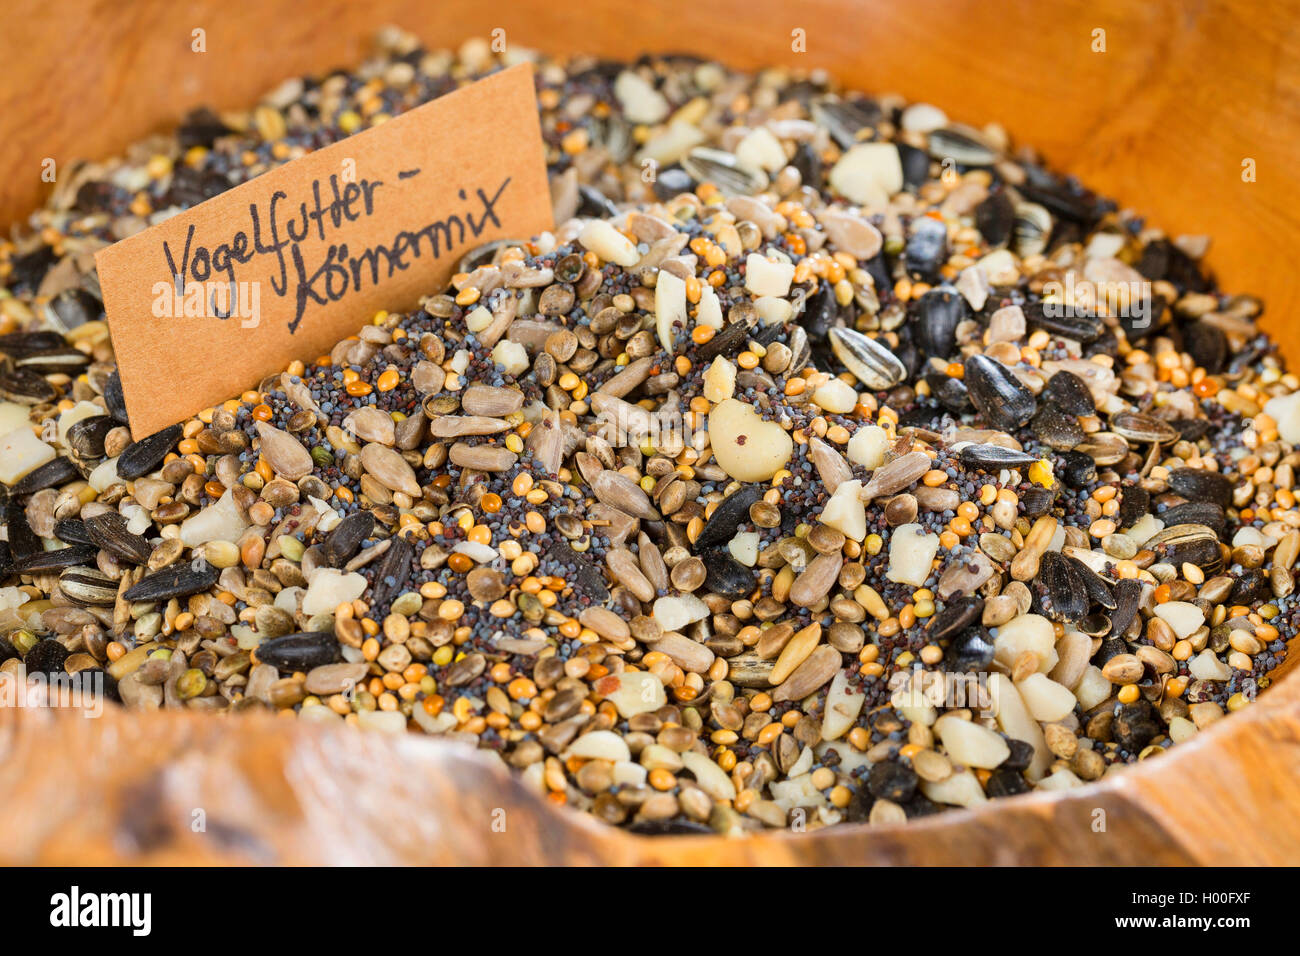 Koernermischung fuer selbstgemachtes Vogelfutter aus verschiedenen Samen und Fruechten | ingredients for selfmade birdseed, diff Stock Photo